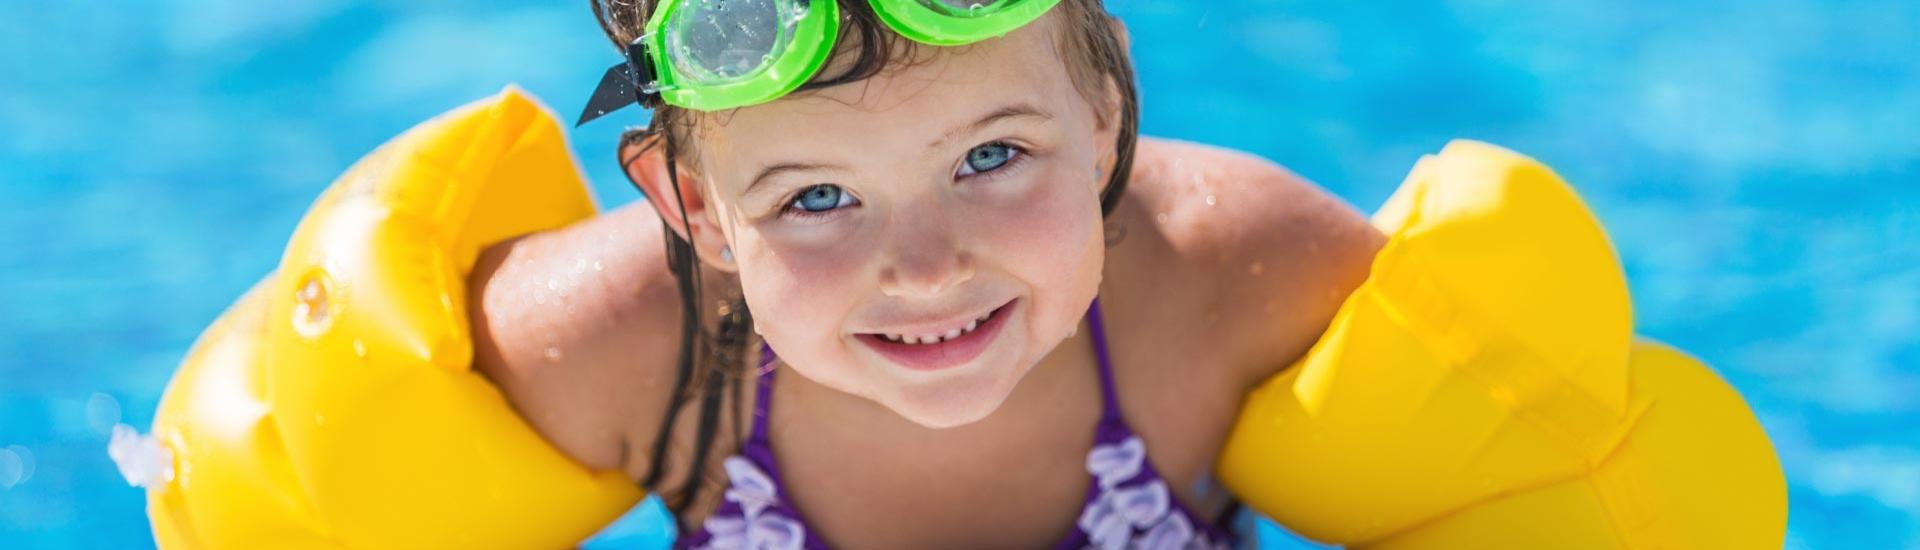 Bambina con braccioli gialli e occhialini verdi in piscina.